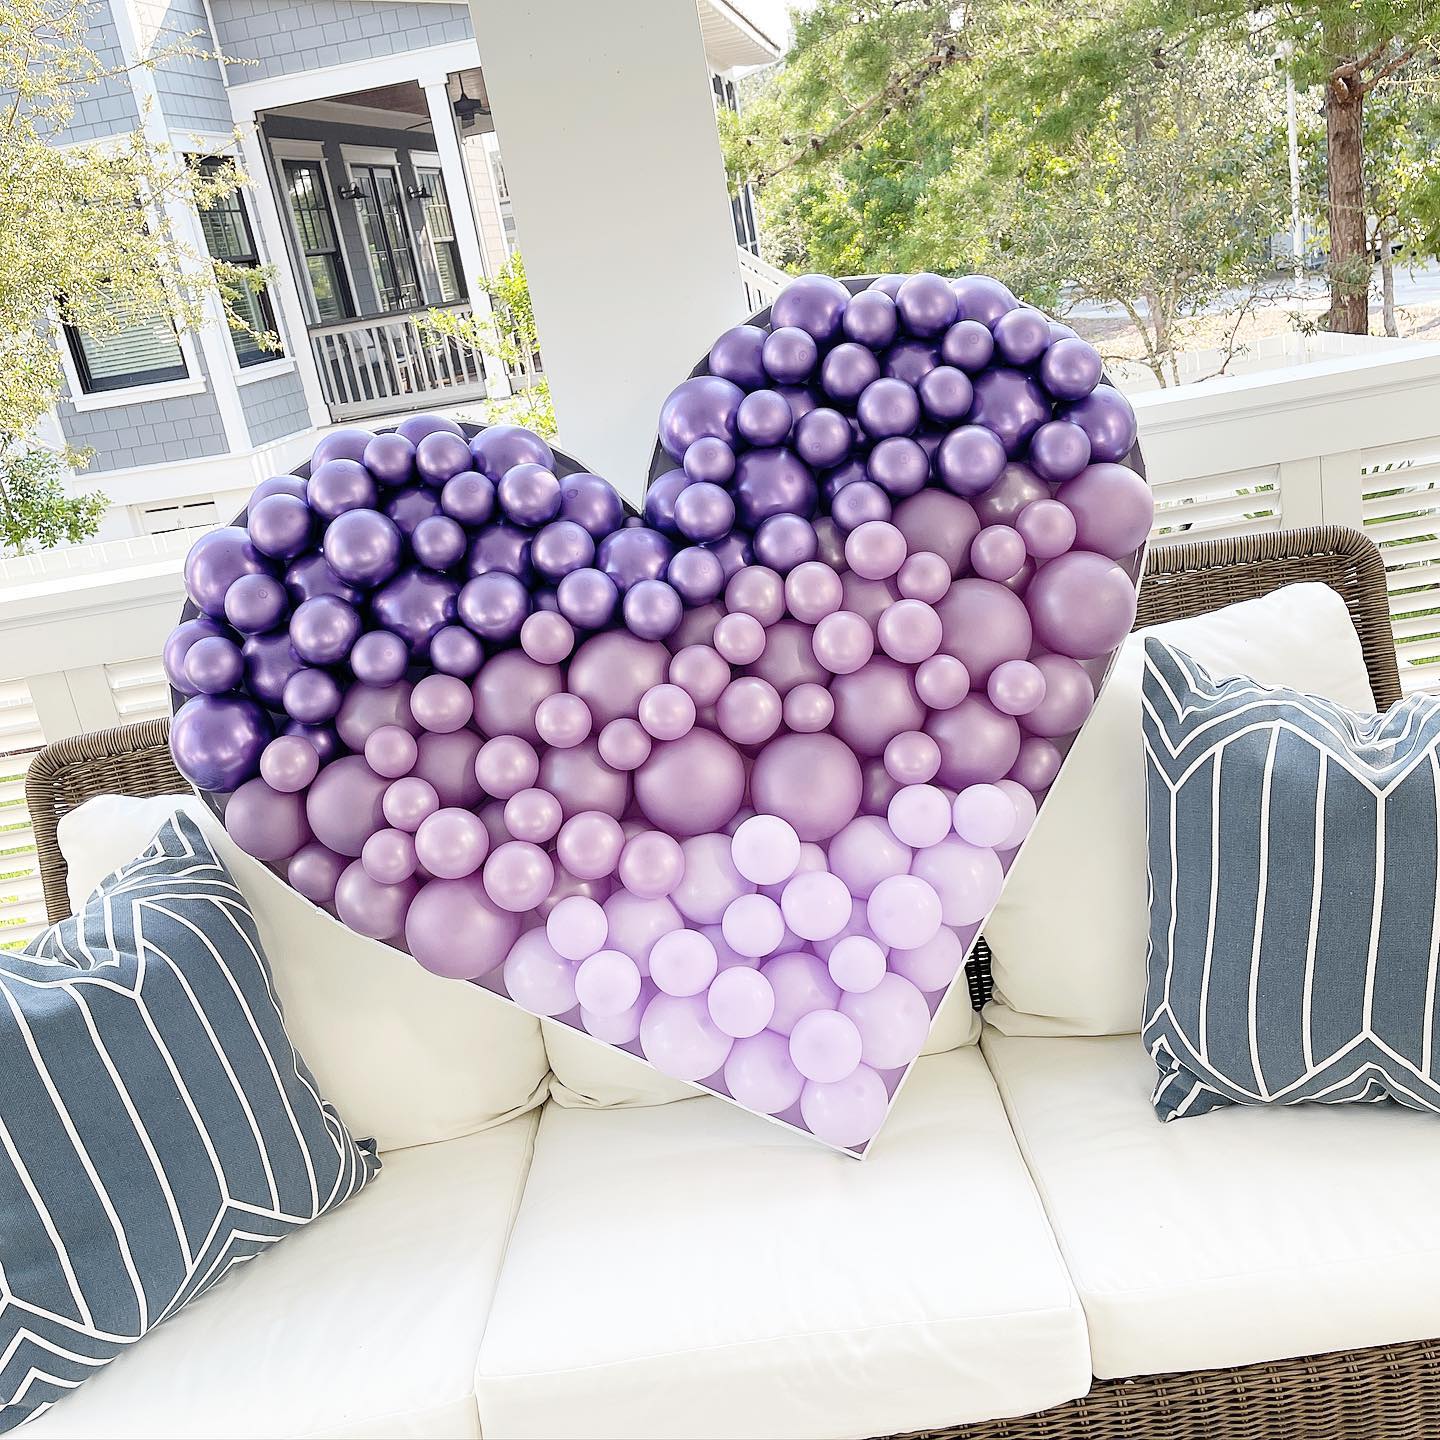 Ombré 💜

#ombreballoons #heartmosaic #heartballoon #balloonmosaic #heart #balloonstylist #balloonartist #valentinesdayballoons #valentinesdecor #30a #watersoundflorida